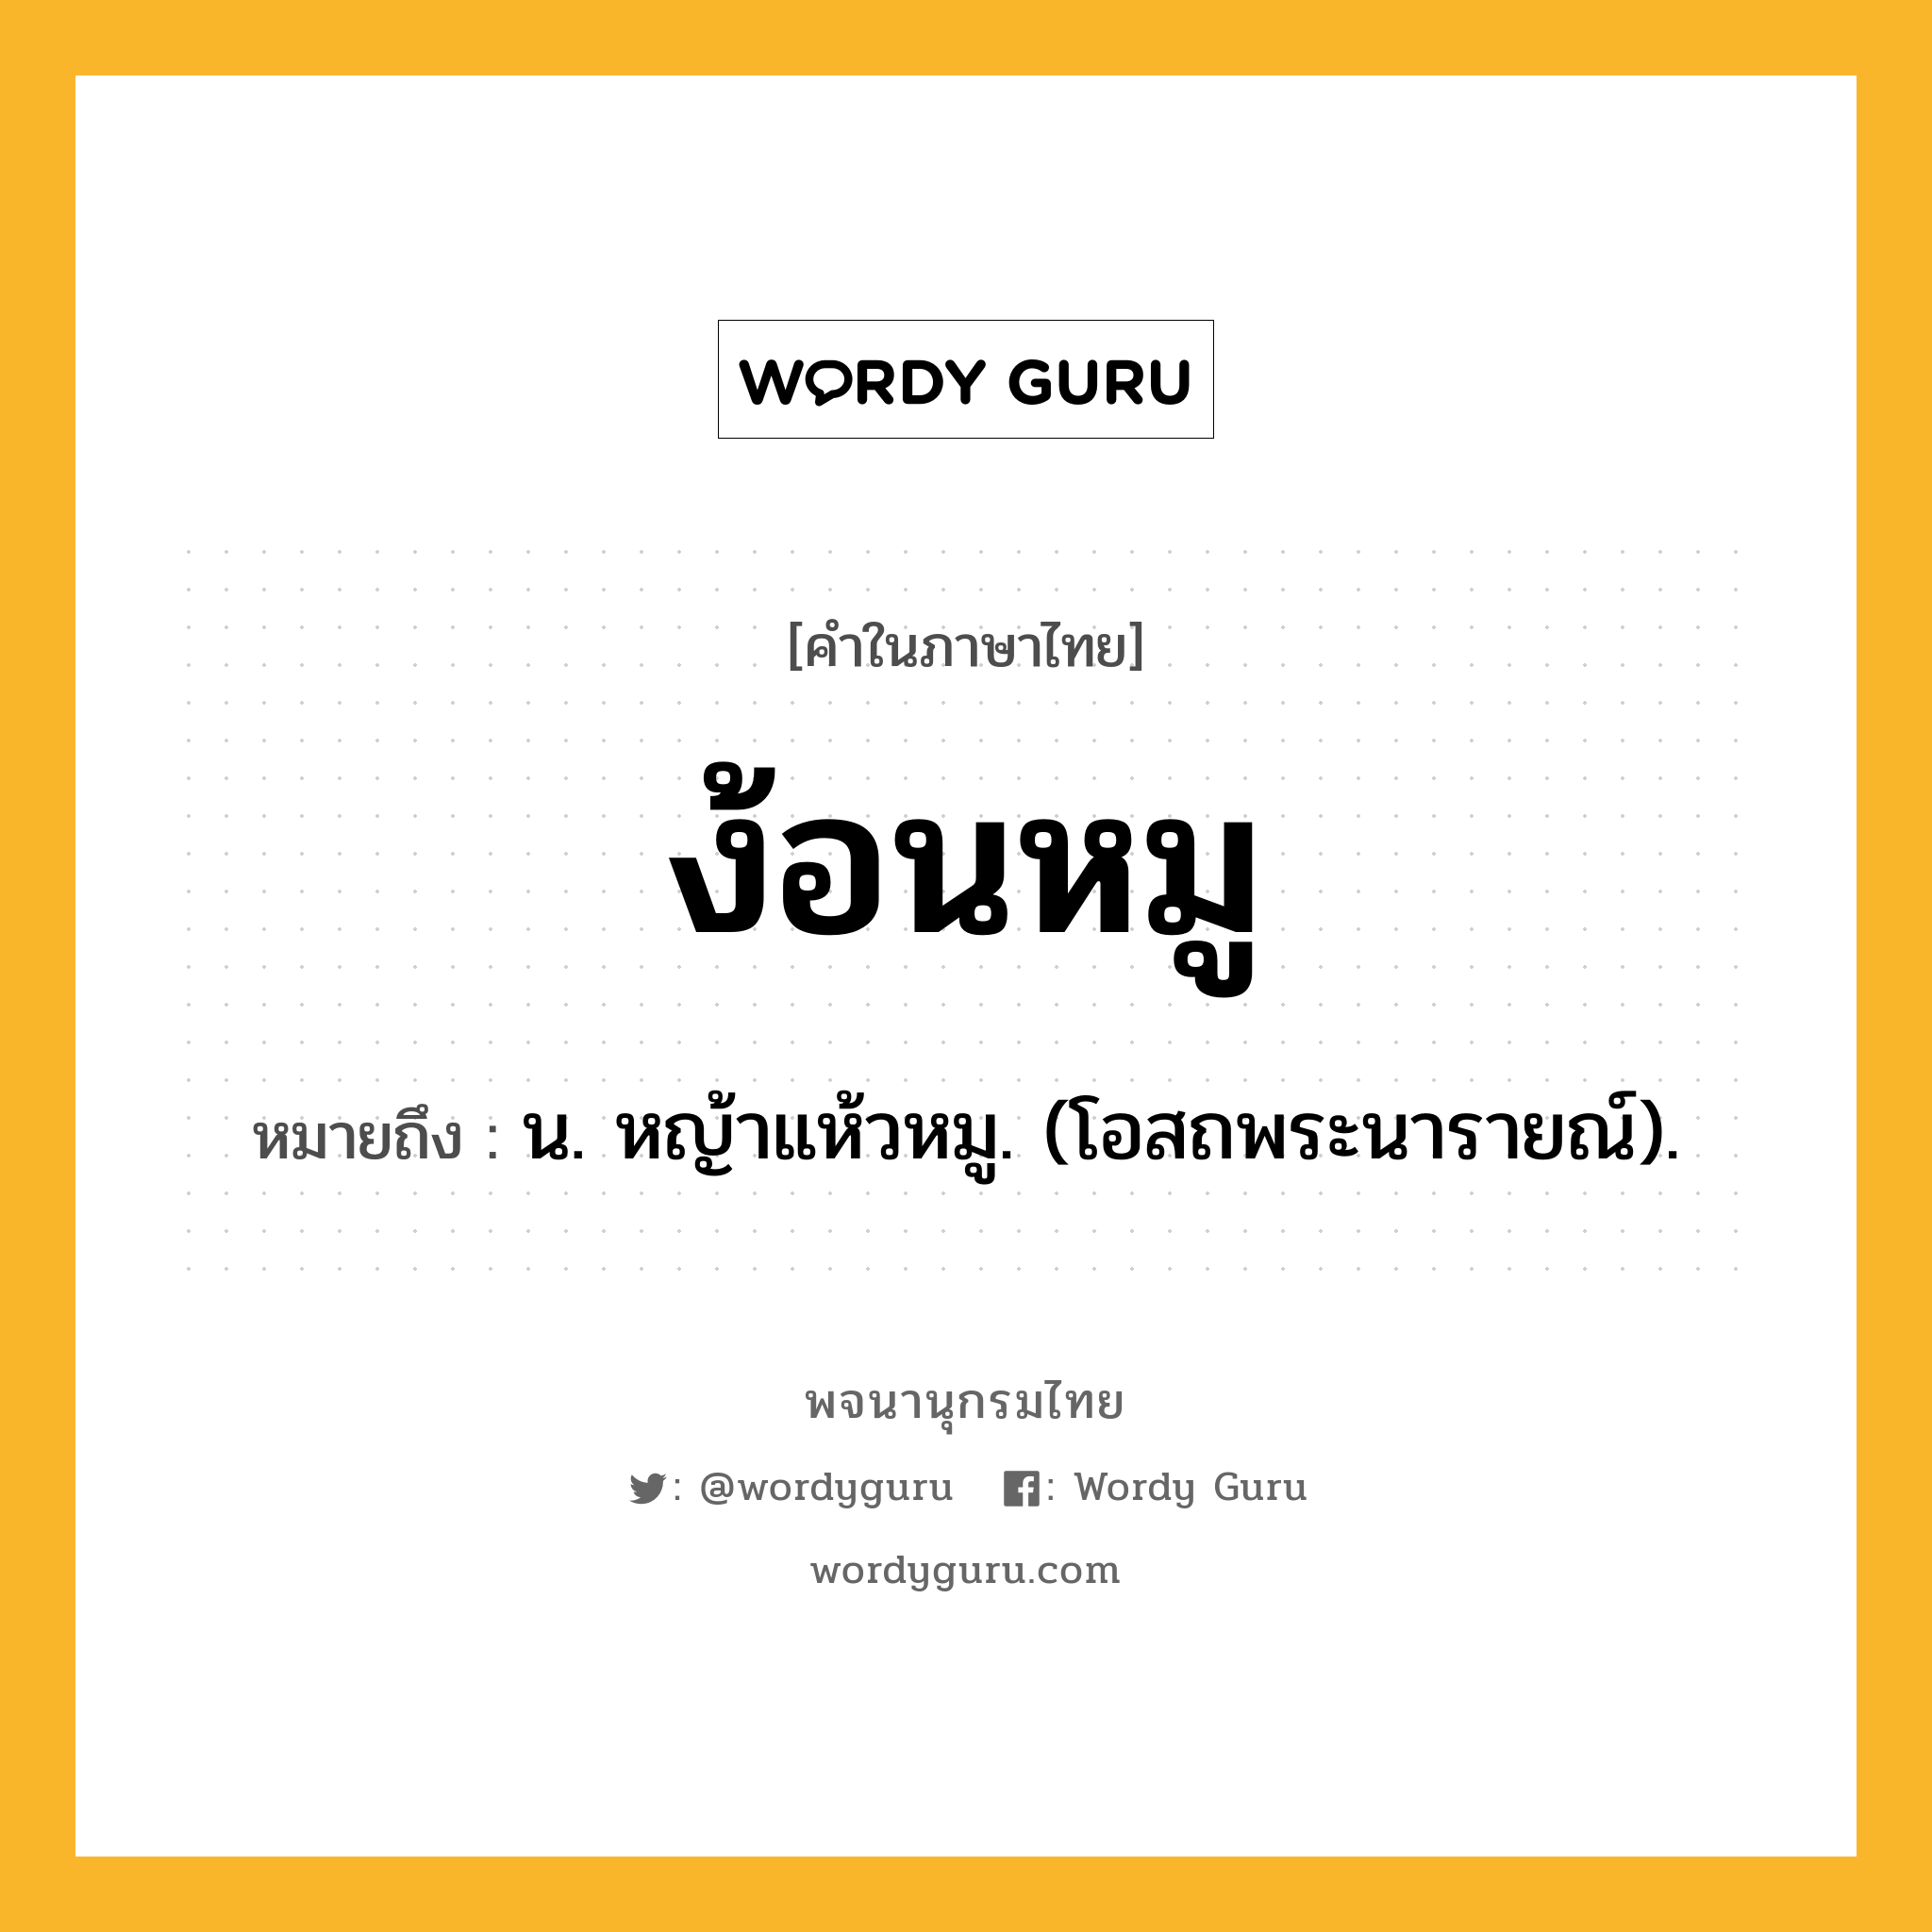 ง้อนหมู ความหมาย หมายถึงอะไร?, คำในภาษาไทย ง้อนหมู หมายถึง น. หญ้าแห้วหมู. (โอสถพระนารายณ์).